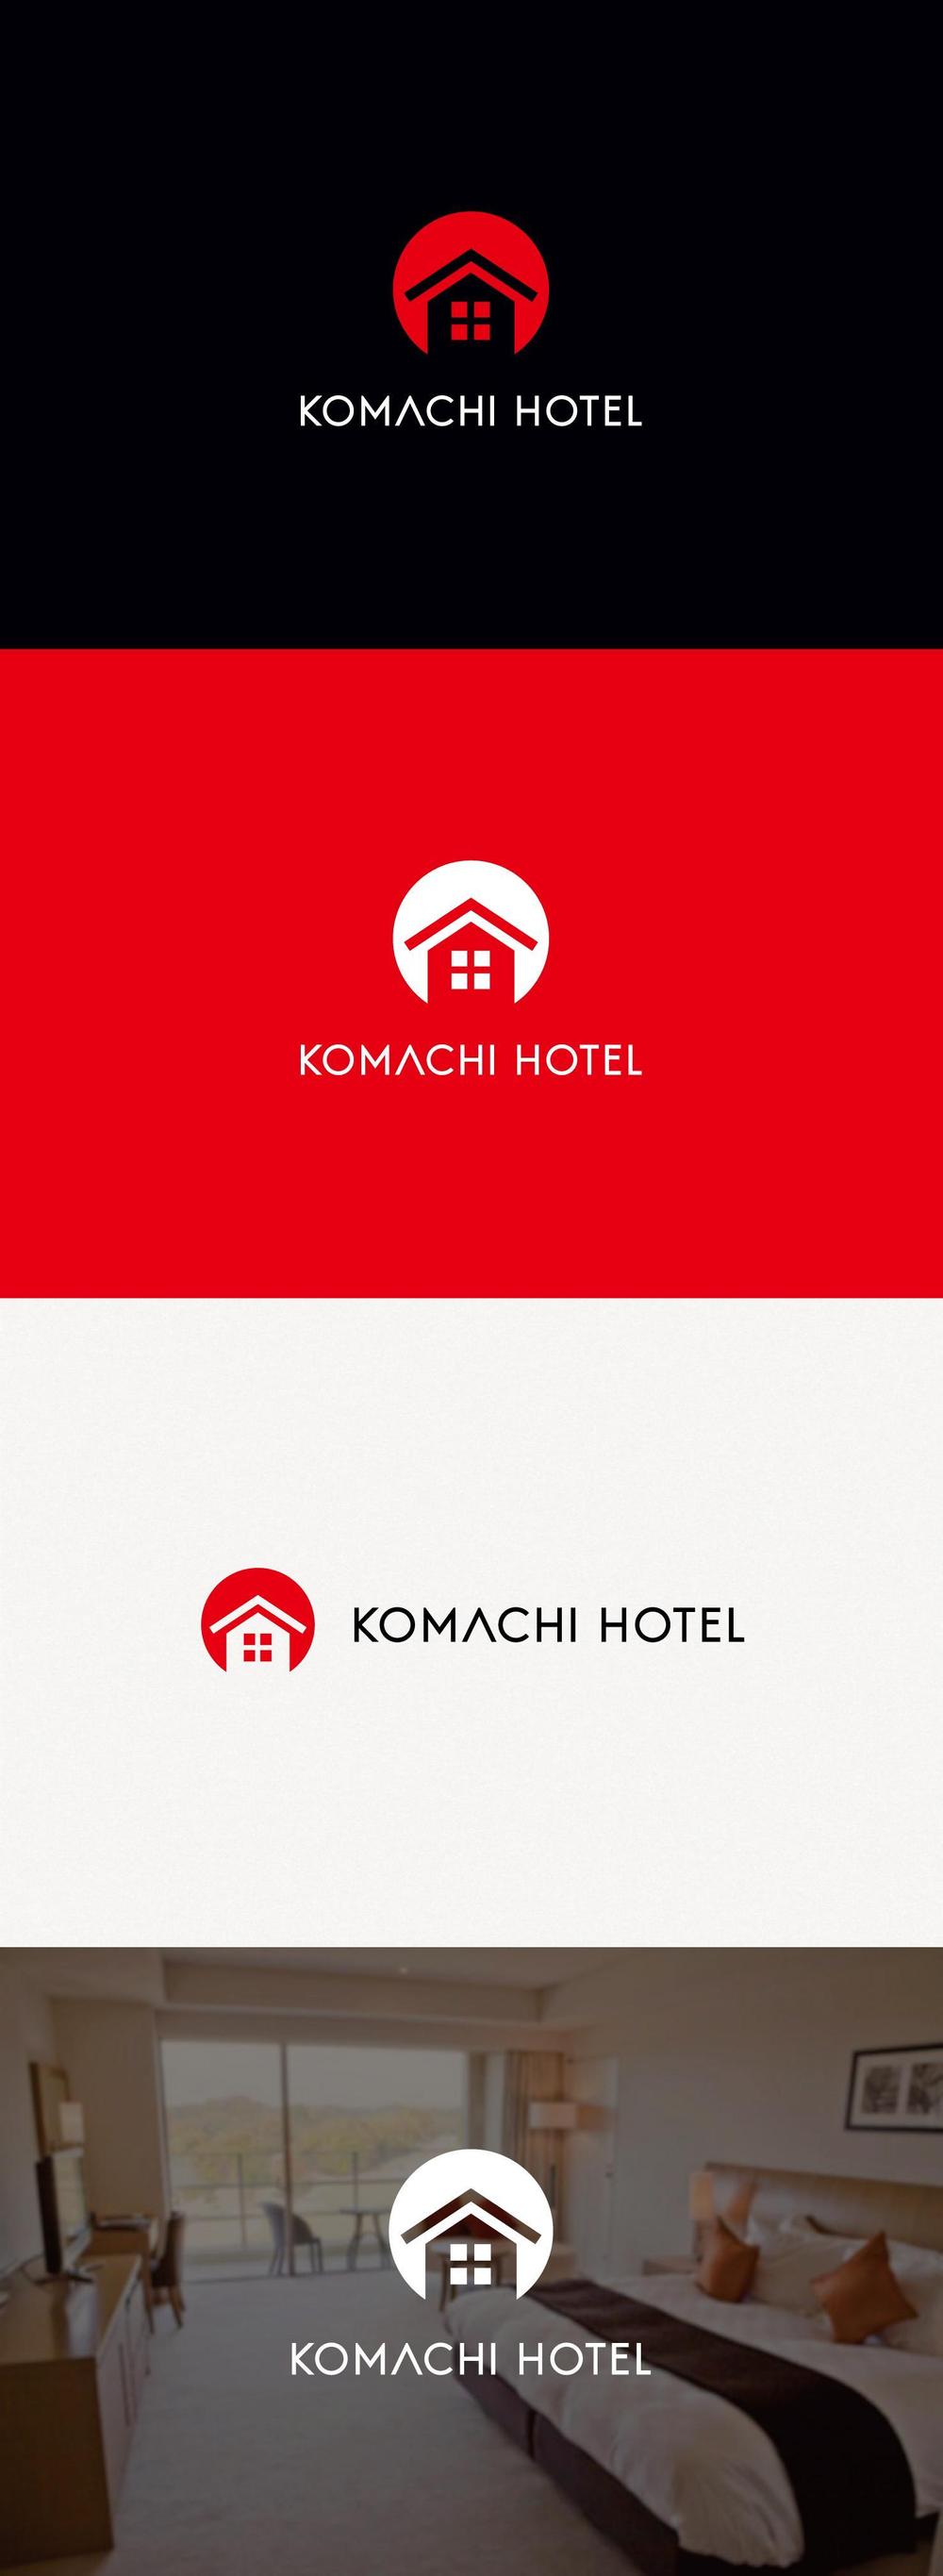 訪日外国人向けホテル『KOMACHI HOTEL』のロゴ